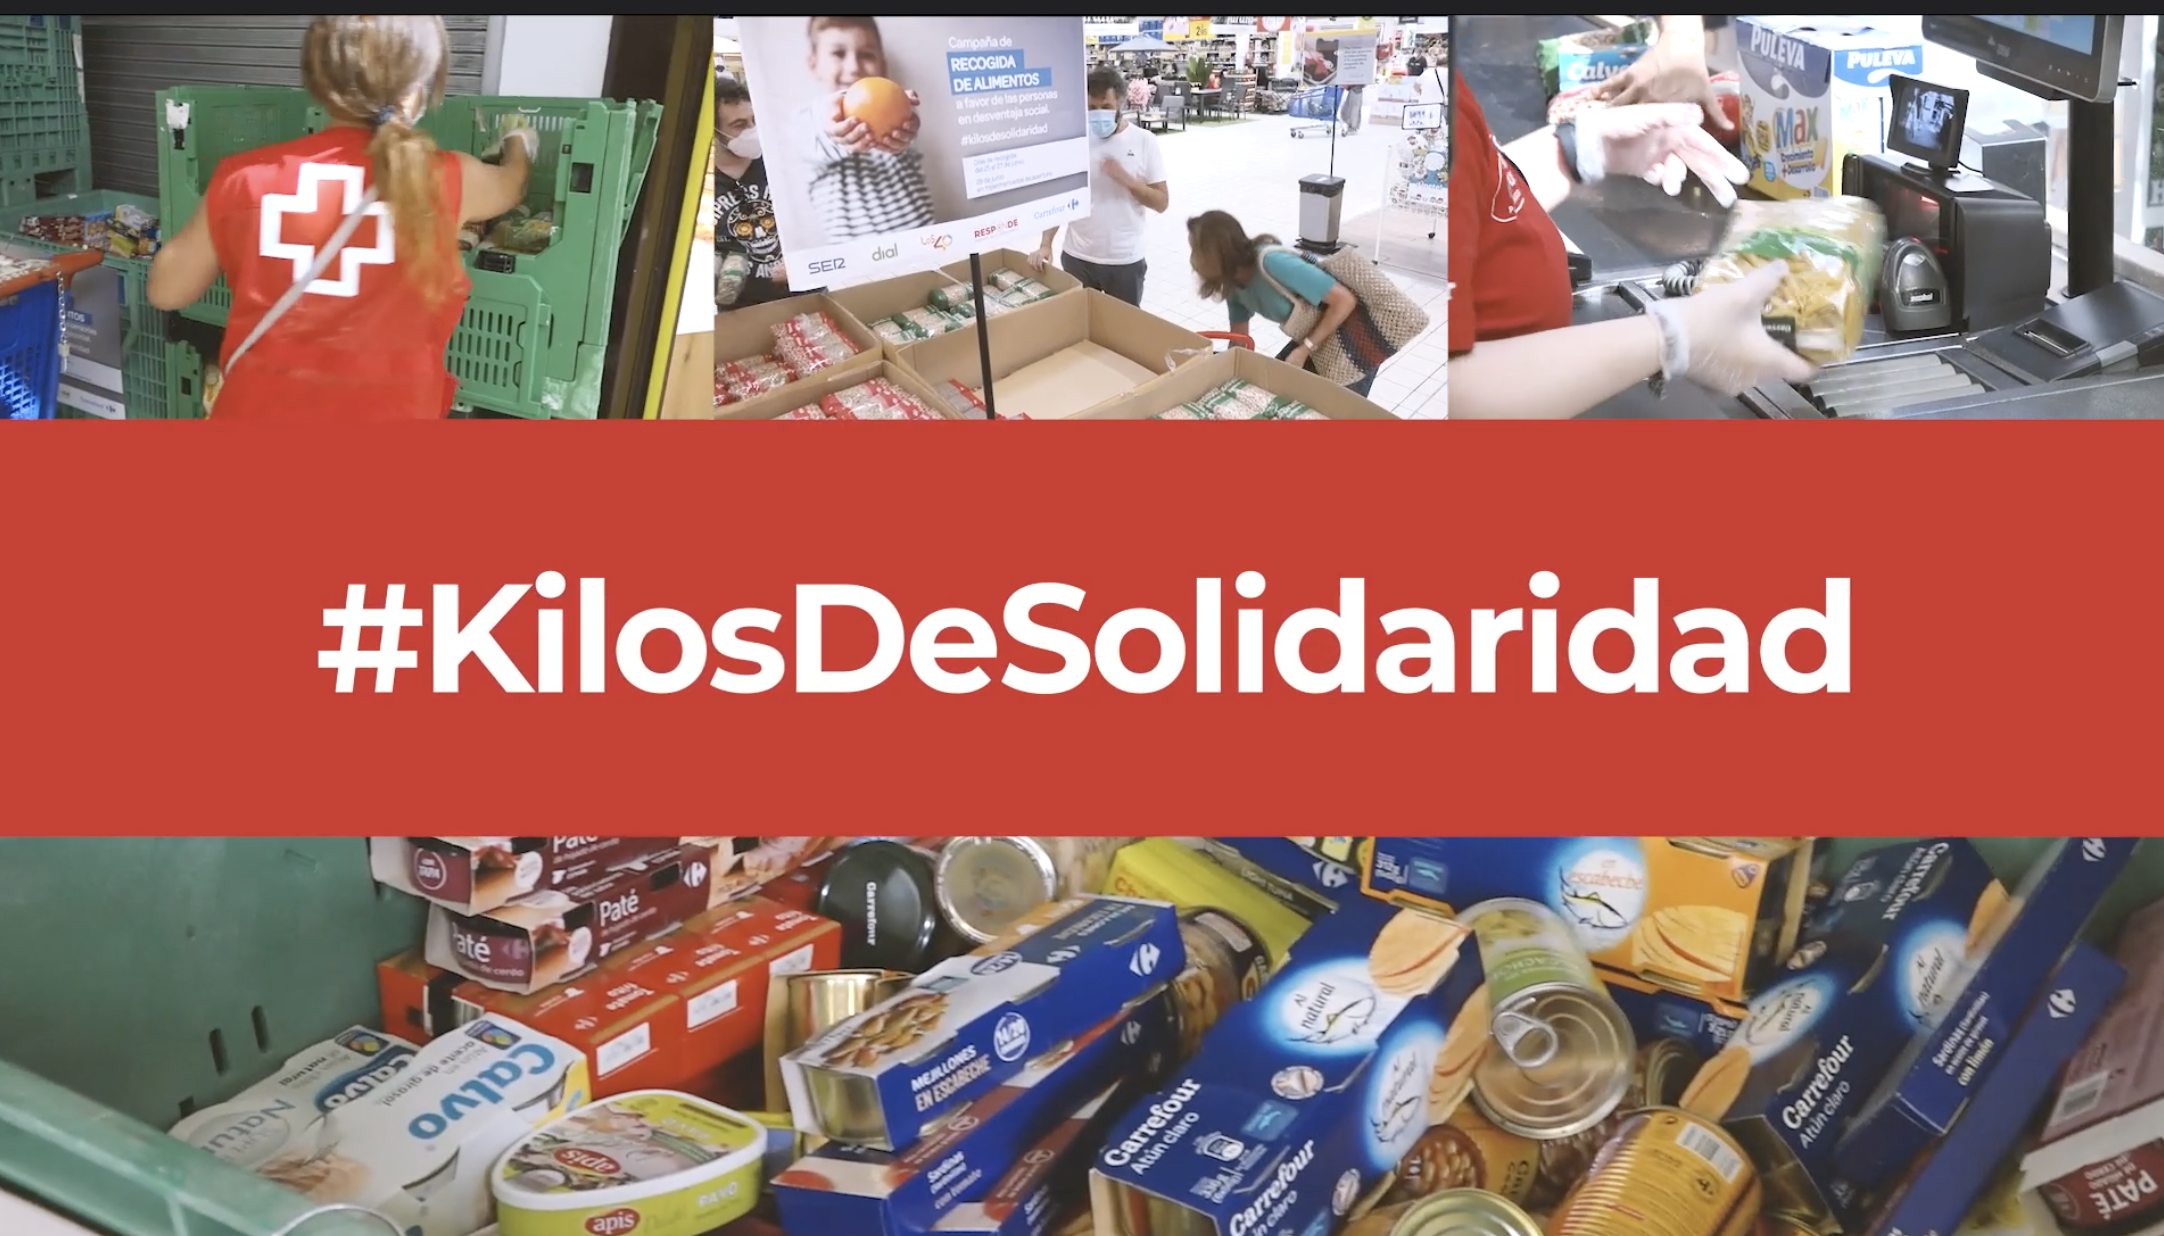 Cruz Roja distribuye 1.139.000 kilos de alimentos a favor de más de 14.200 familias en dificultad social